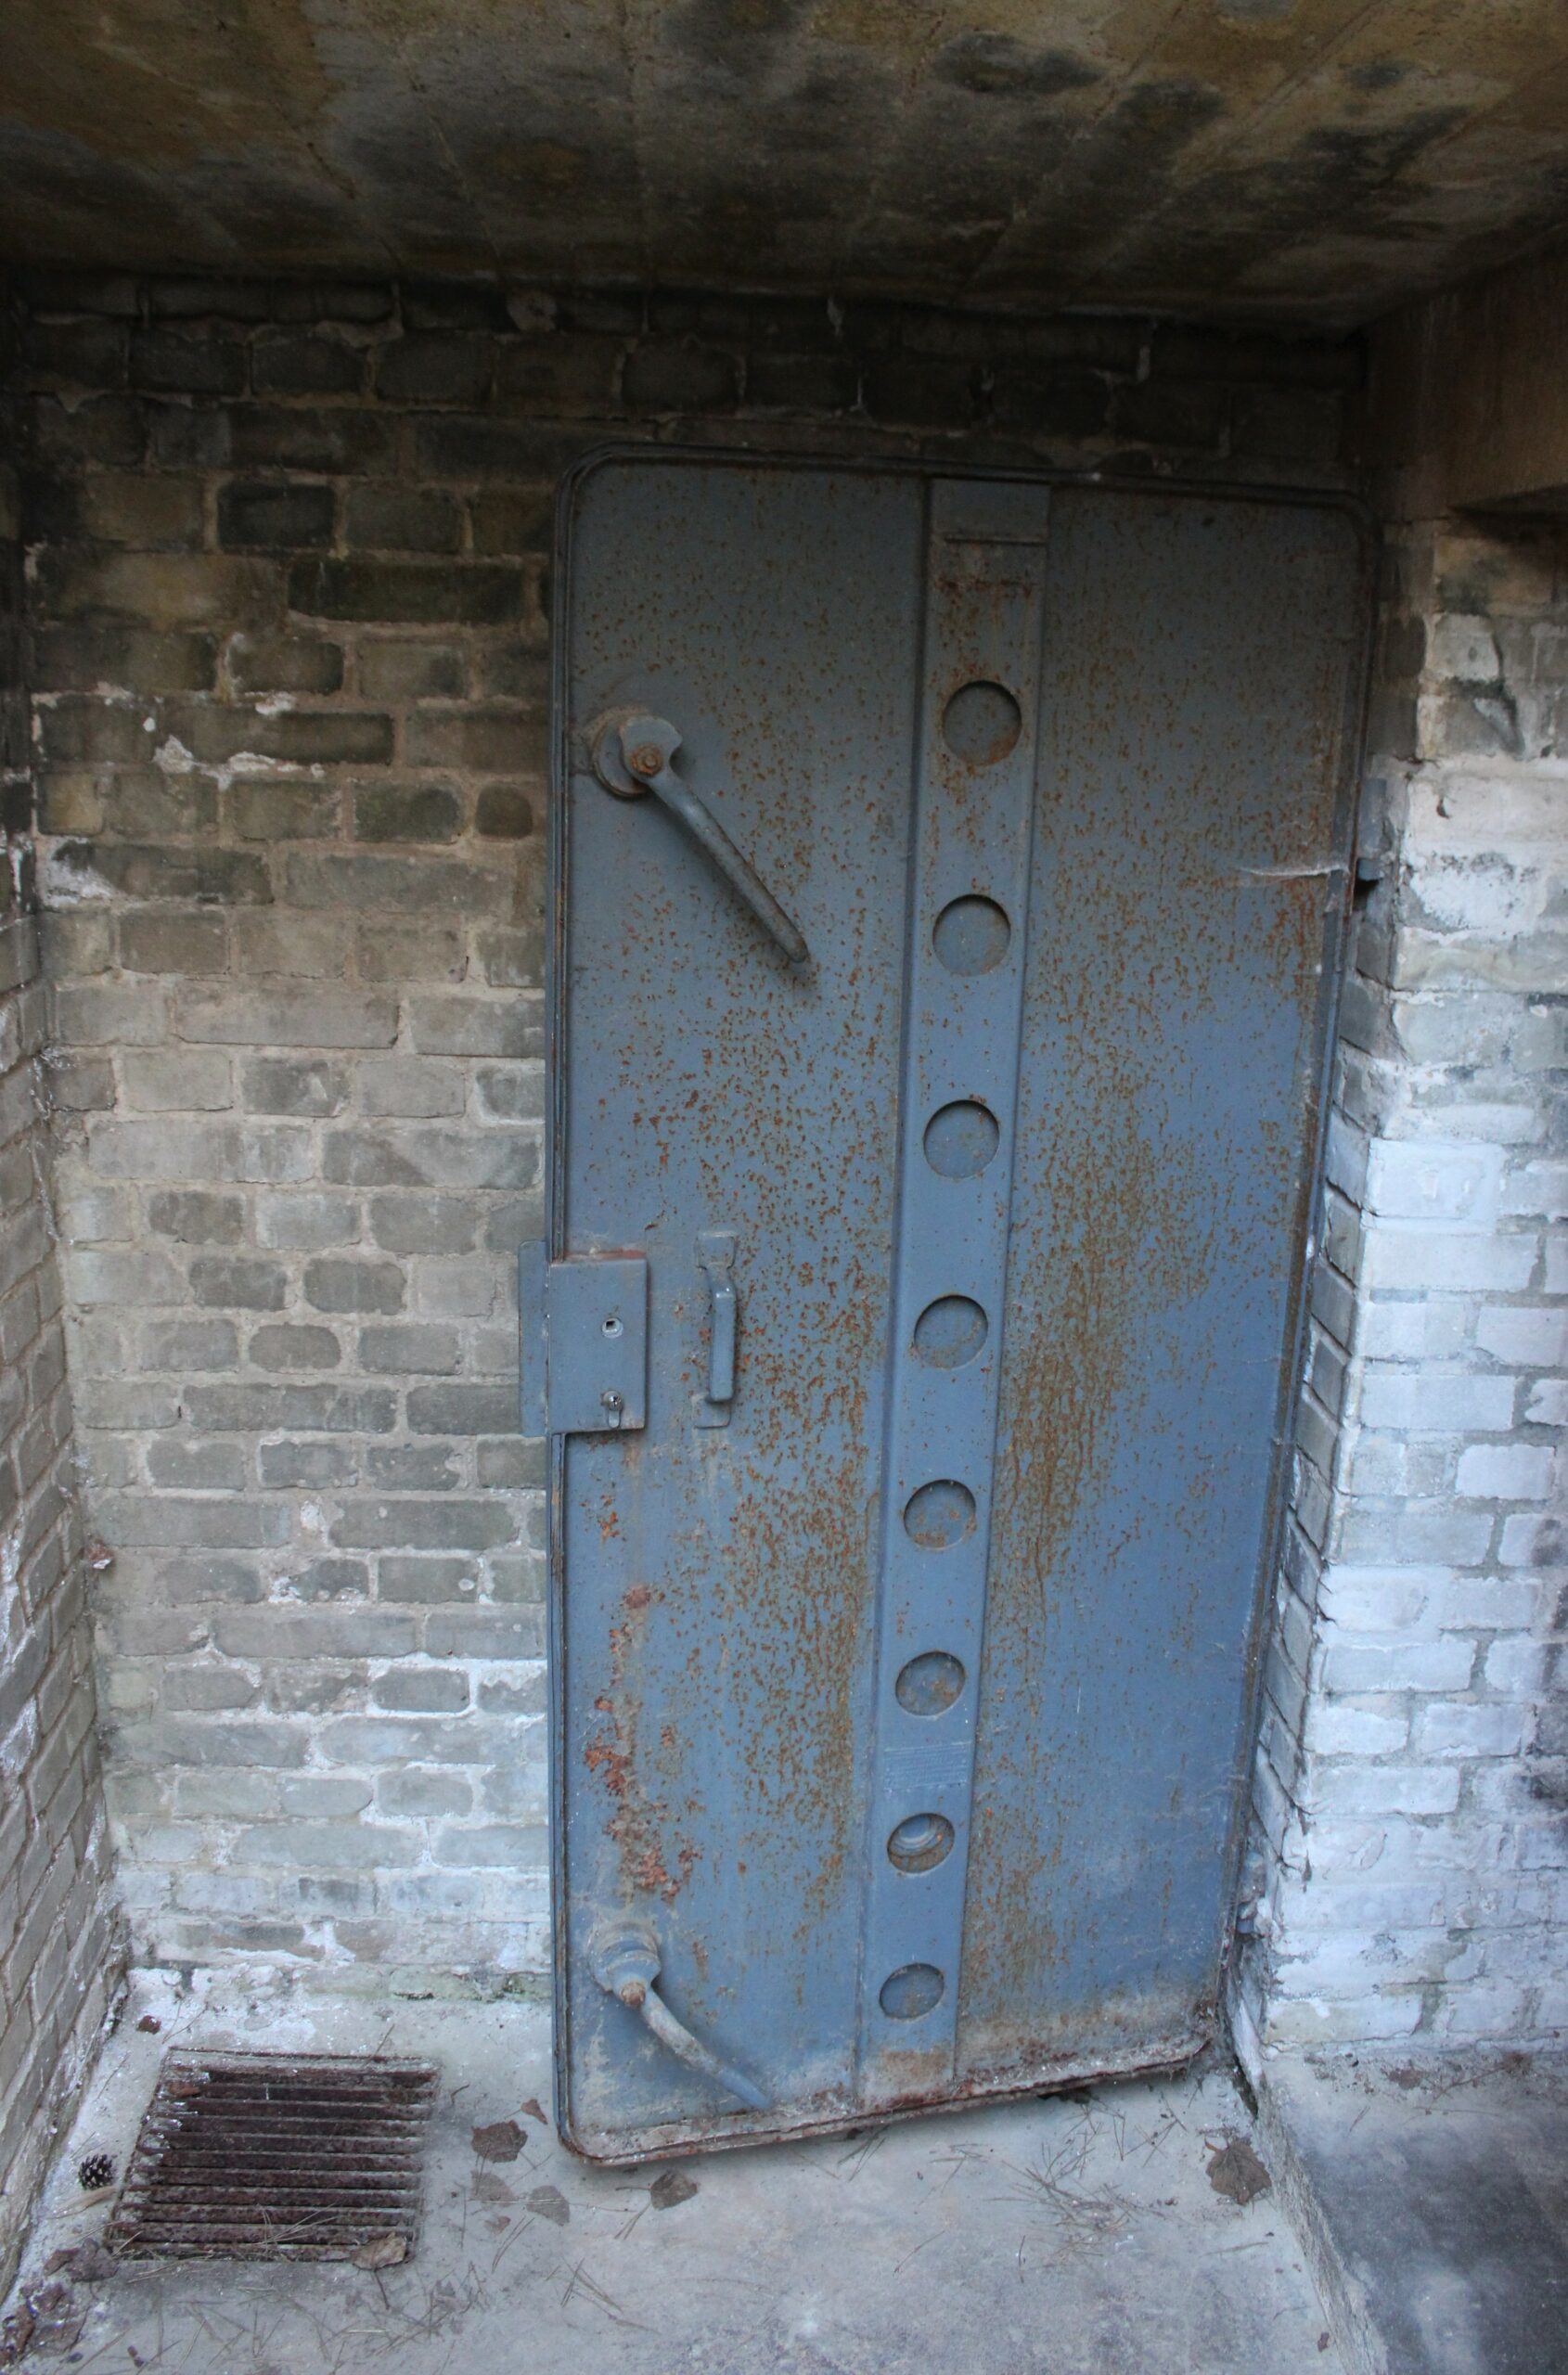 Porte blindée en métal hermétique avec valve de l'abri antiaérien de la baraque 13. Crédits photographiques : © 2020 laromagne.info par Marie-Noëlle ESTIEZ BONHOMME.